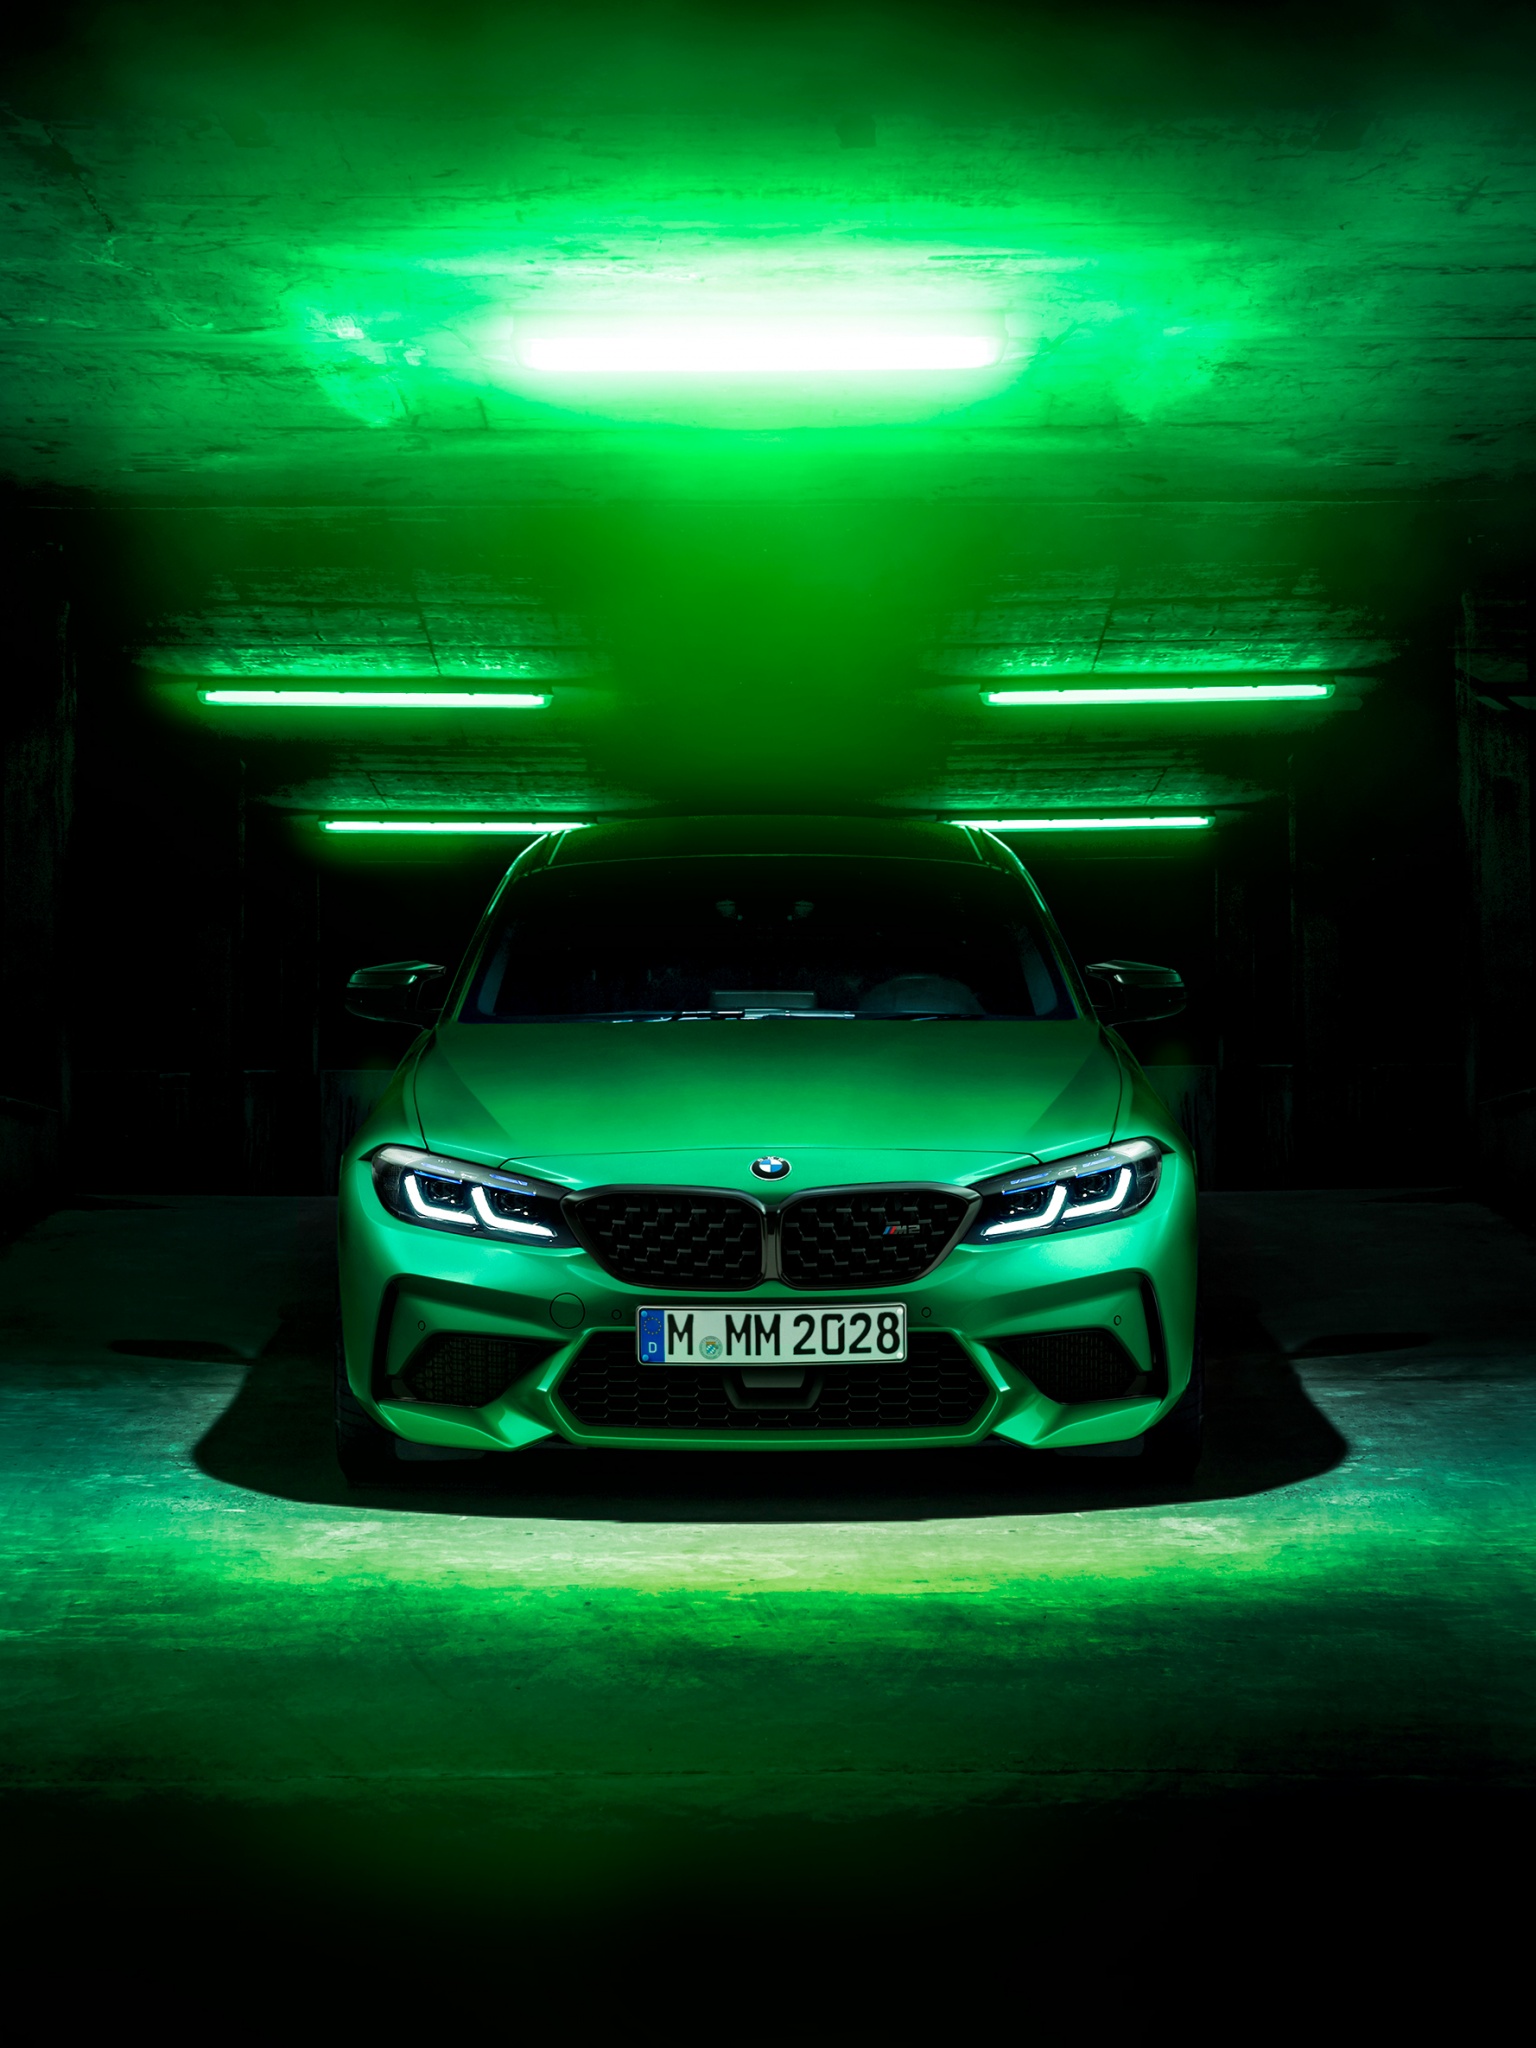 BMW M2 Wallpaper 4K, Green, Dark background, Cars